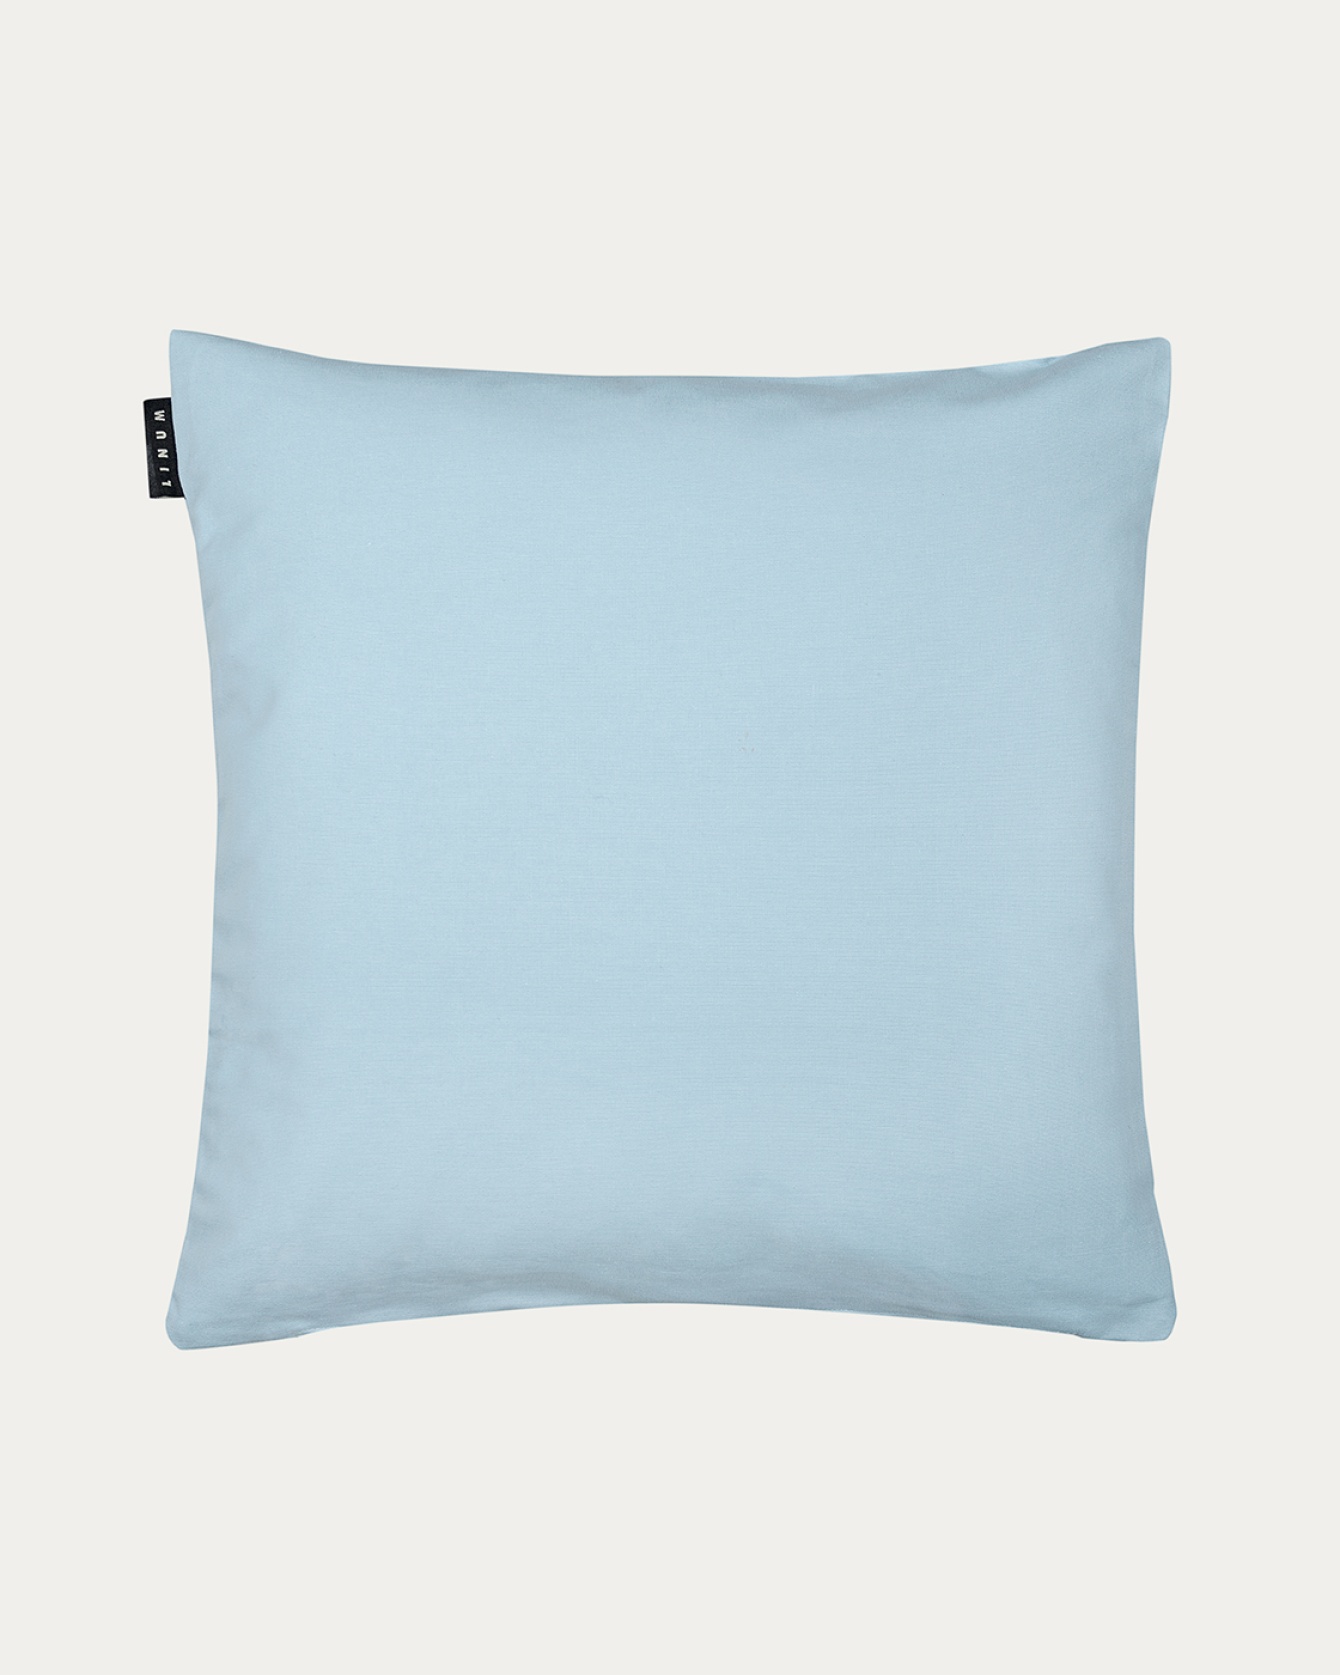 Produktbild helles graublau ANNABELL Kissenhülle aus weicher Baumwolle von LINUM DESIGN. Größe 50x50 cm.